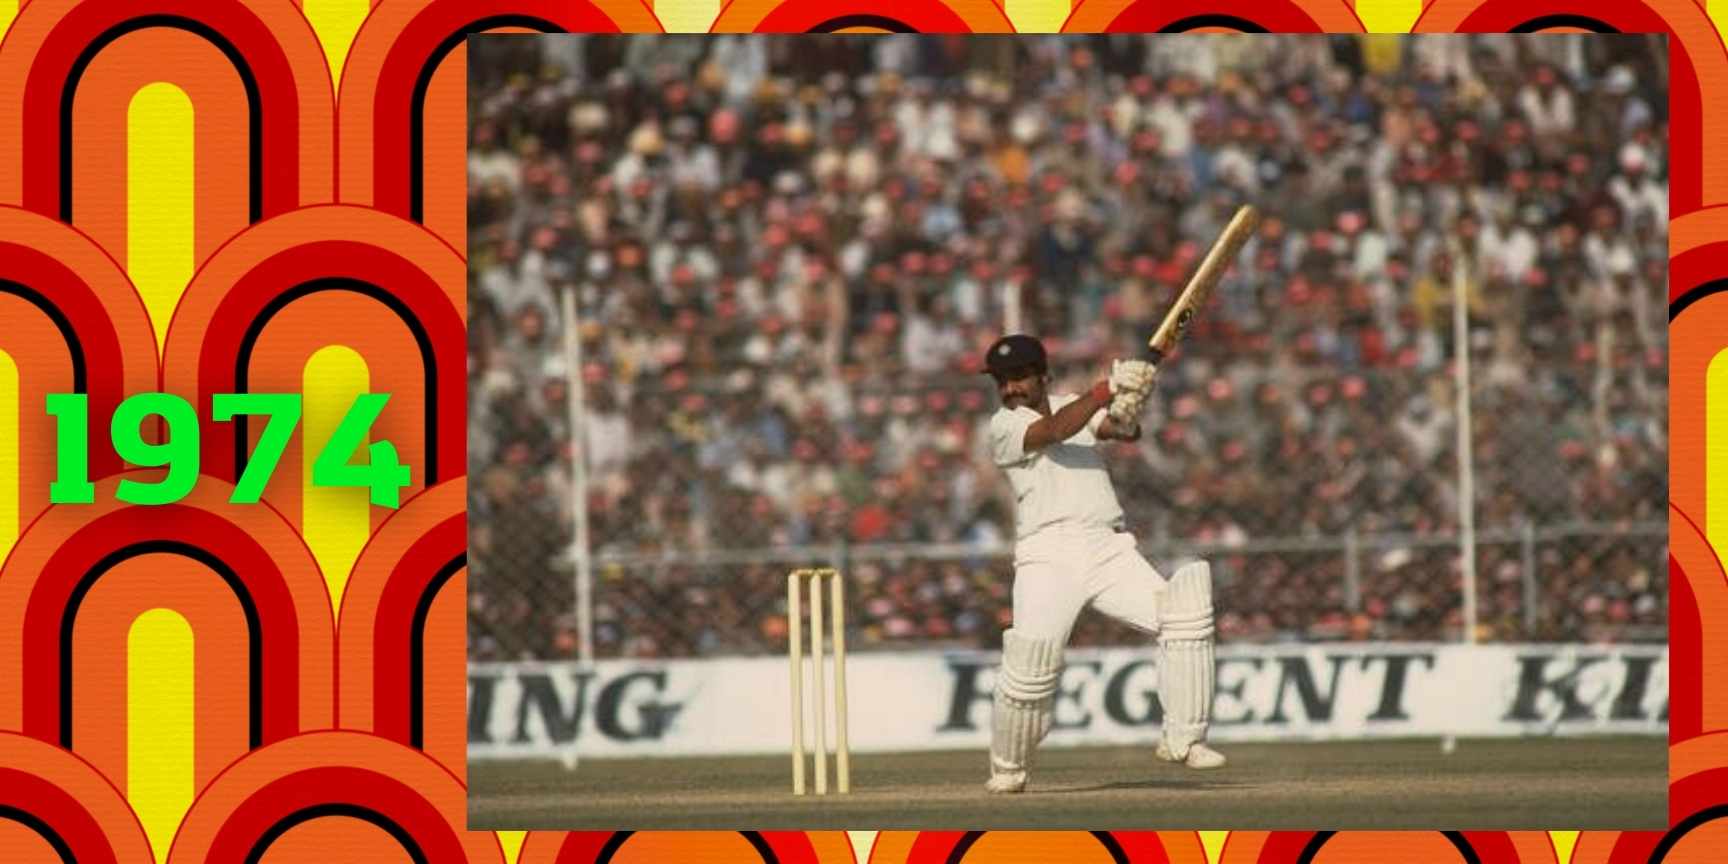 1974 cricket